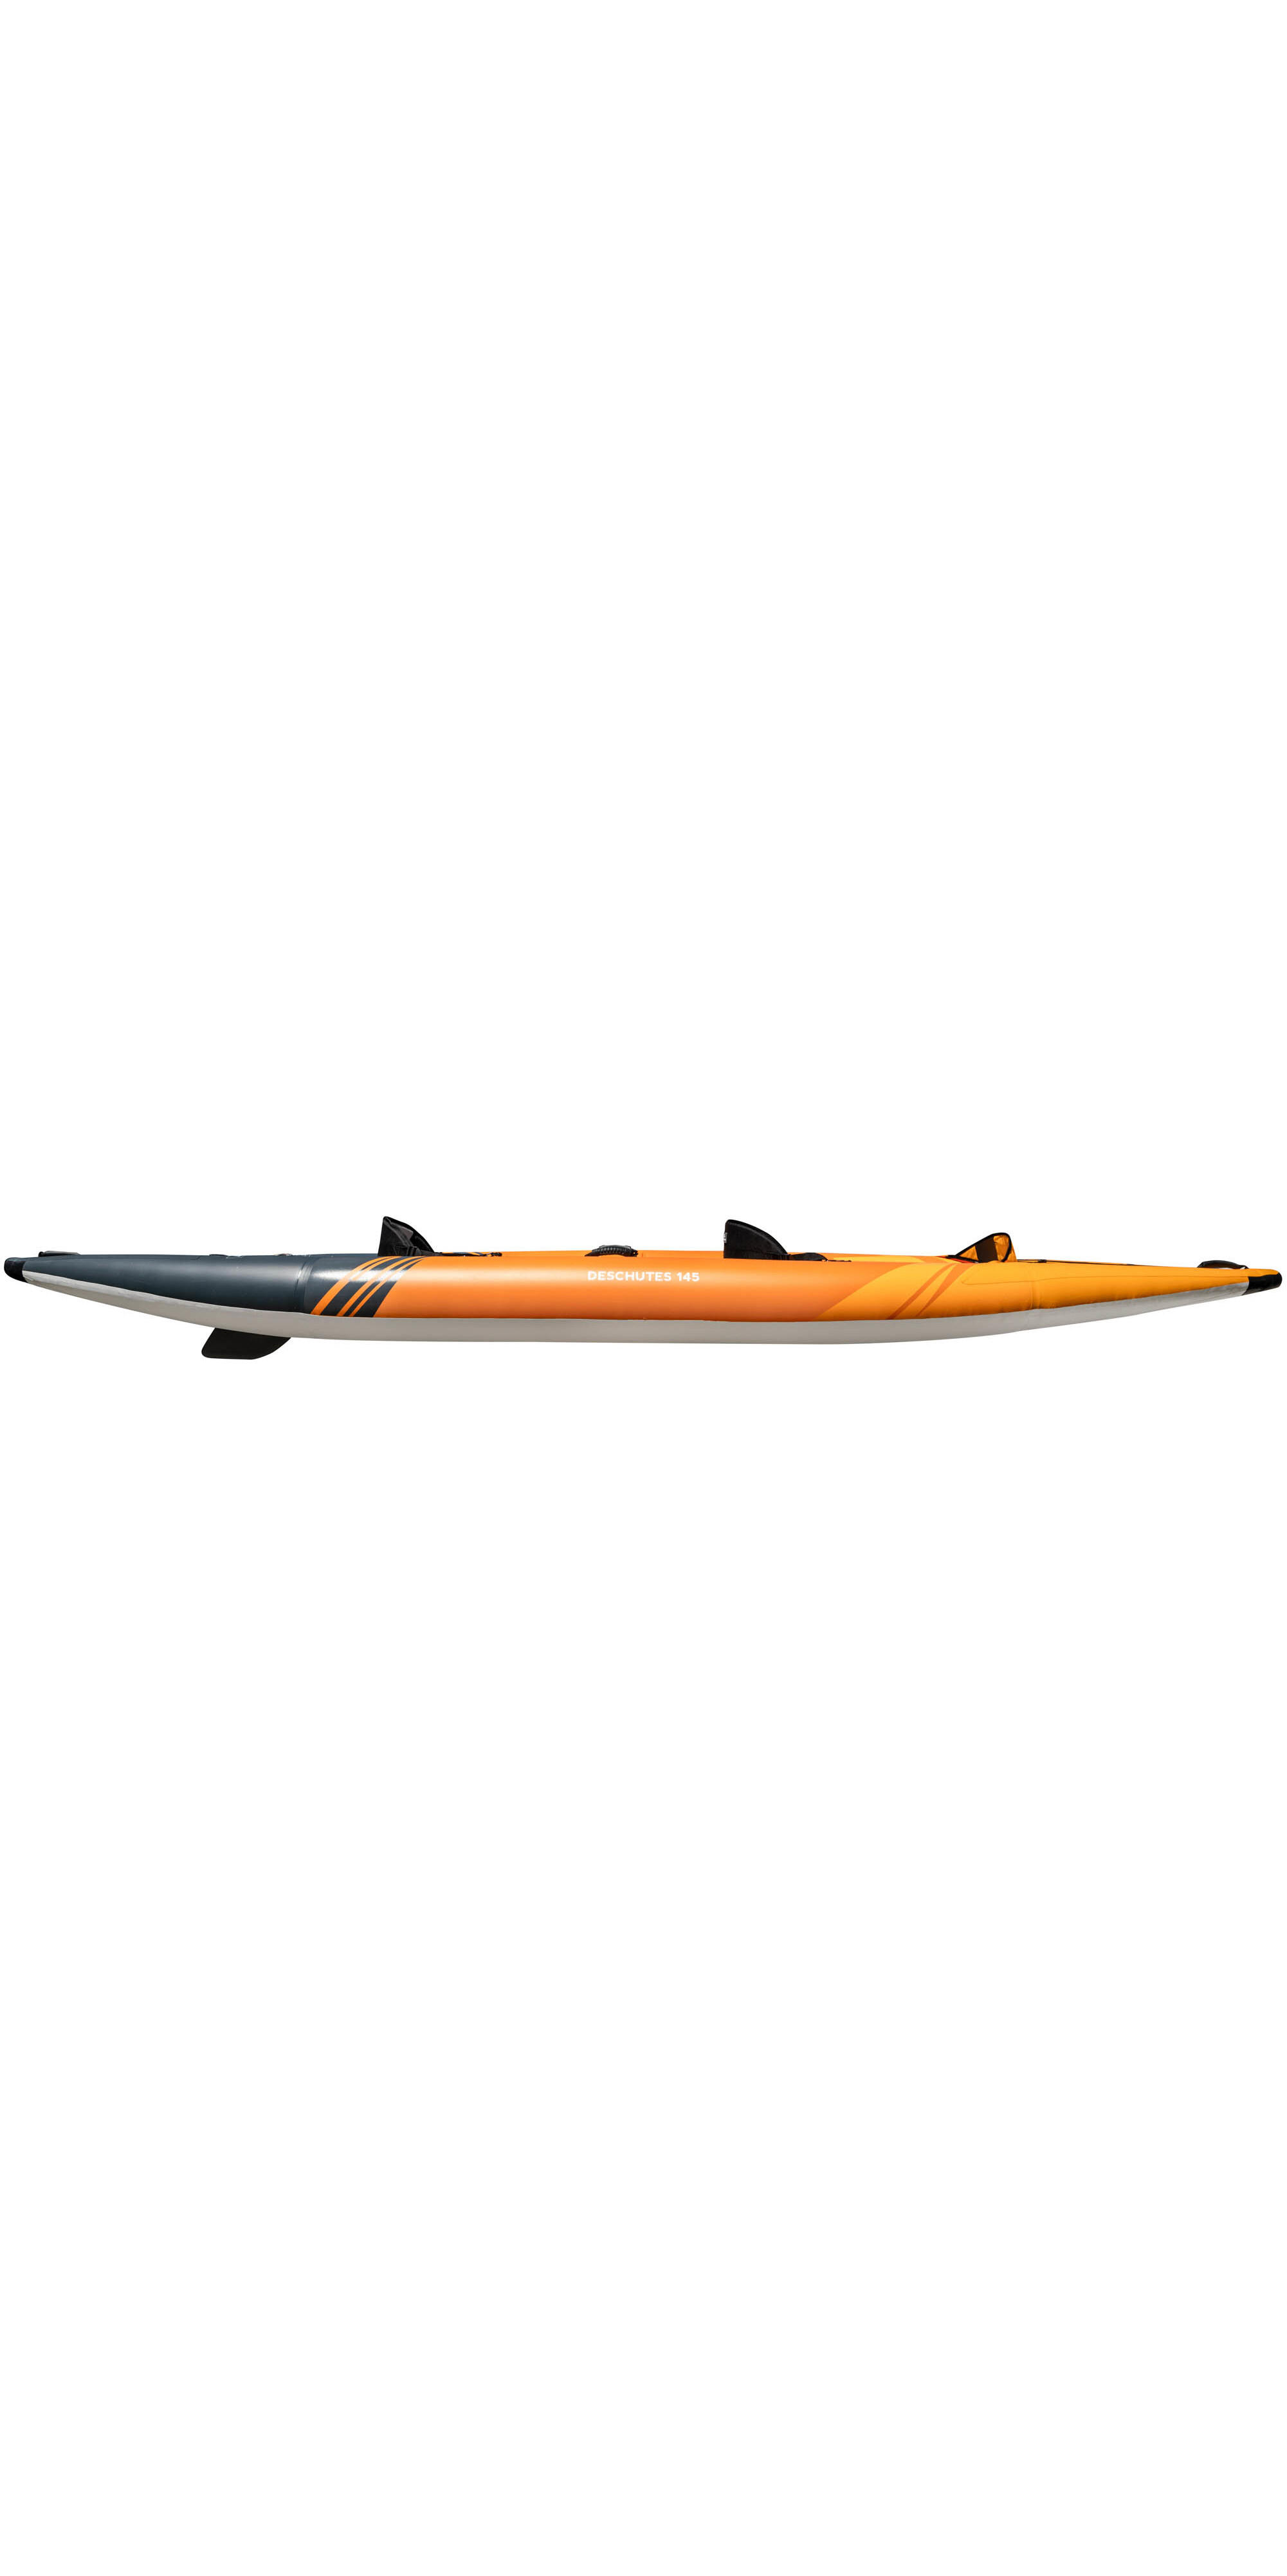 Aquaglide Deschutes 145 2 Man Kayak - Kayak Only 3/4